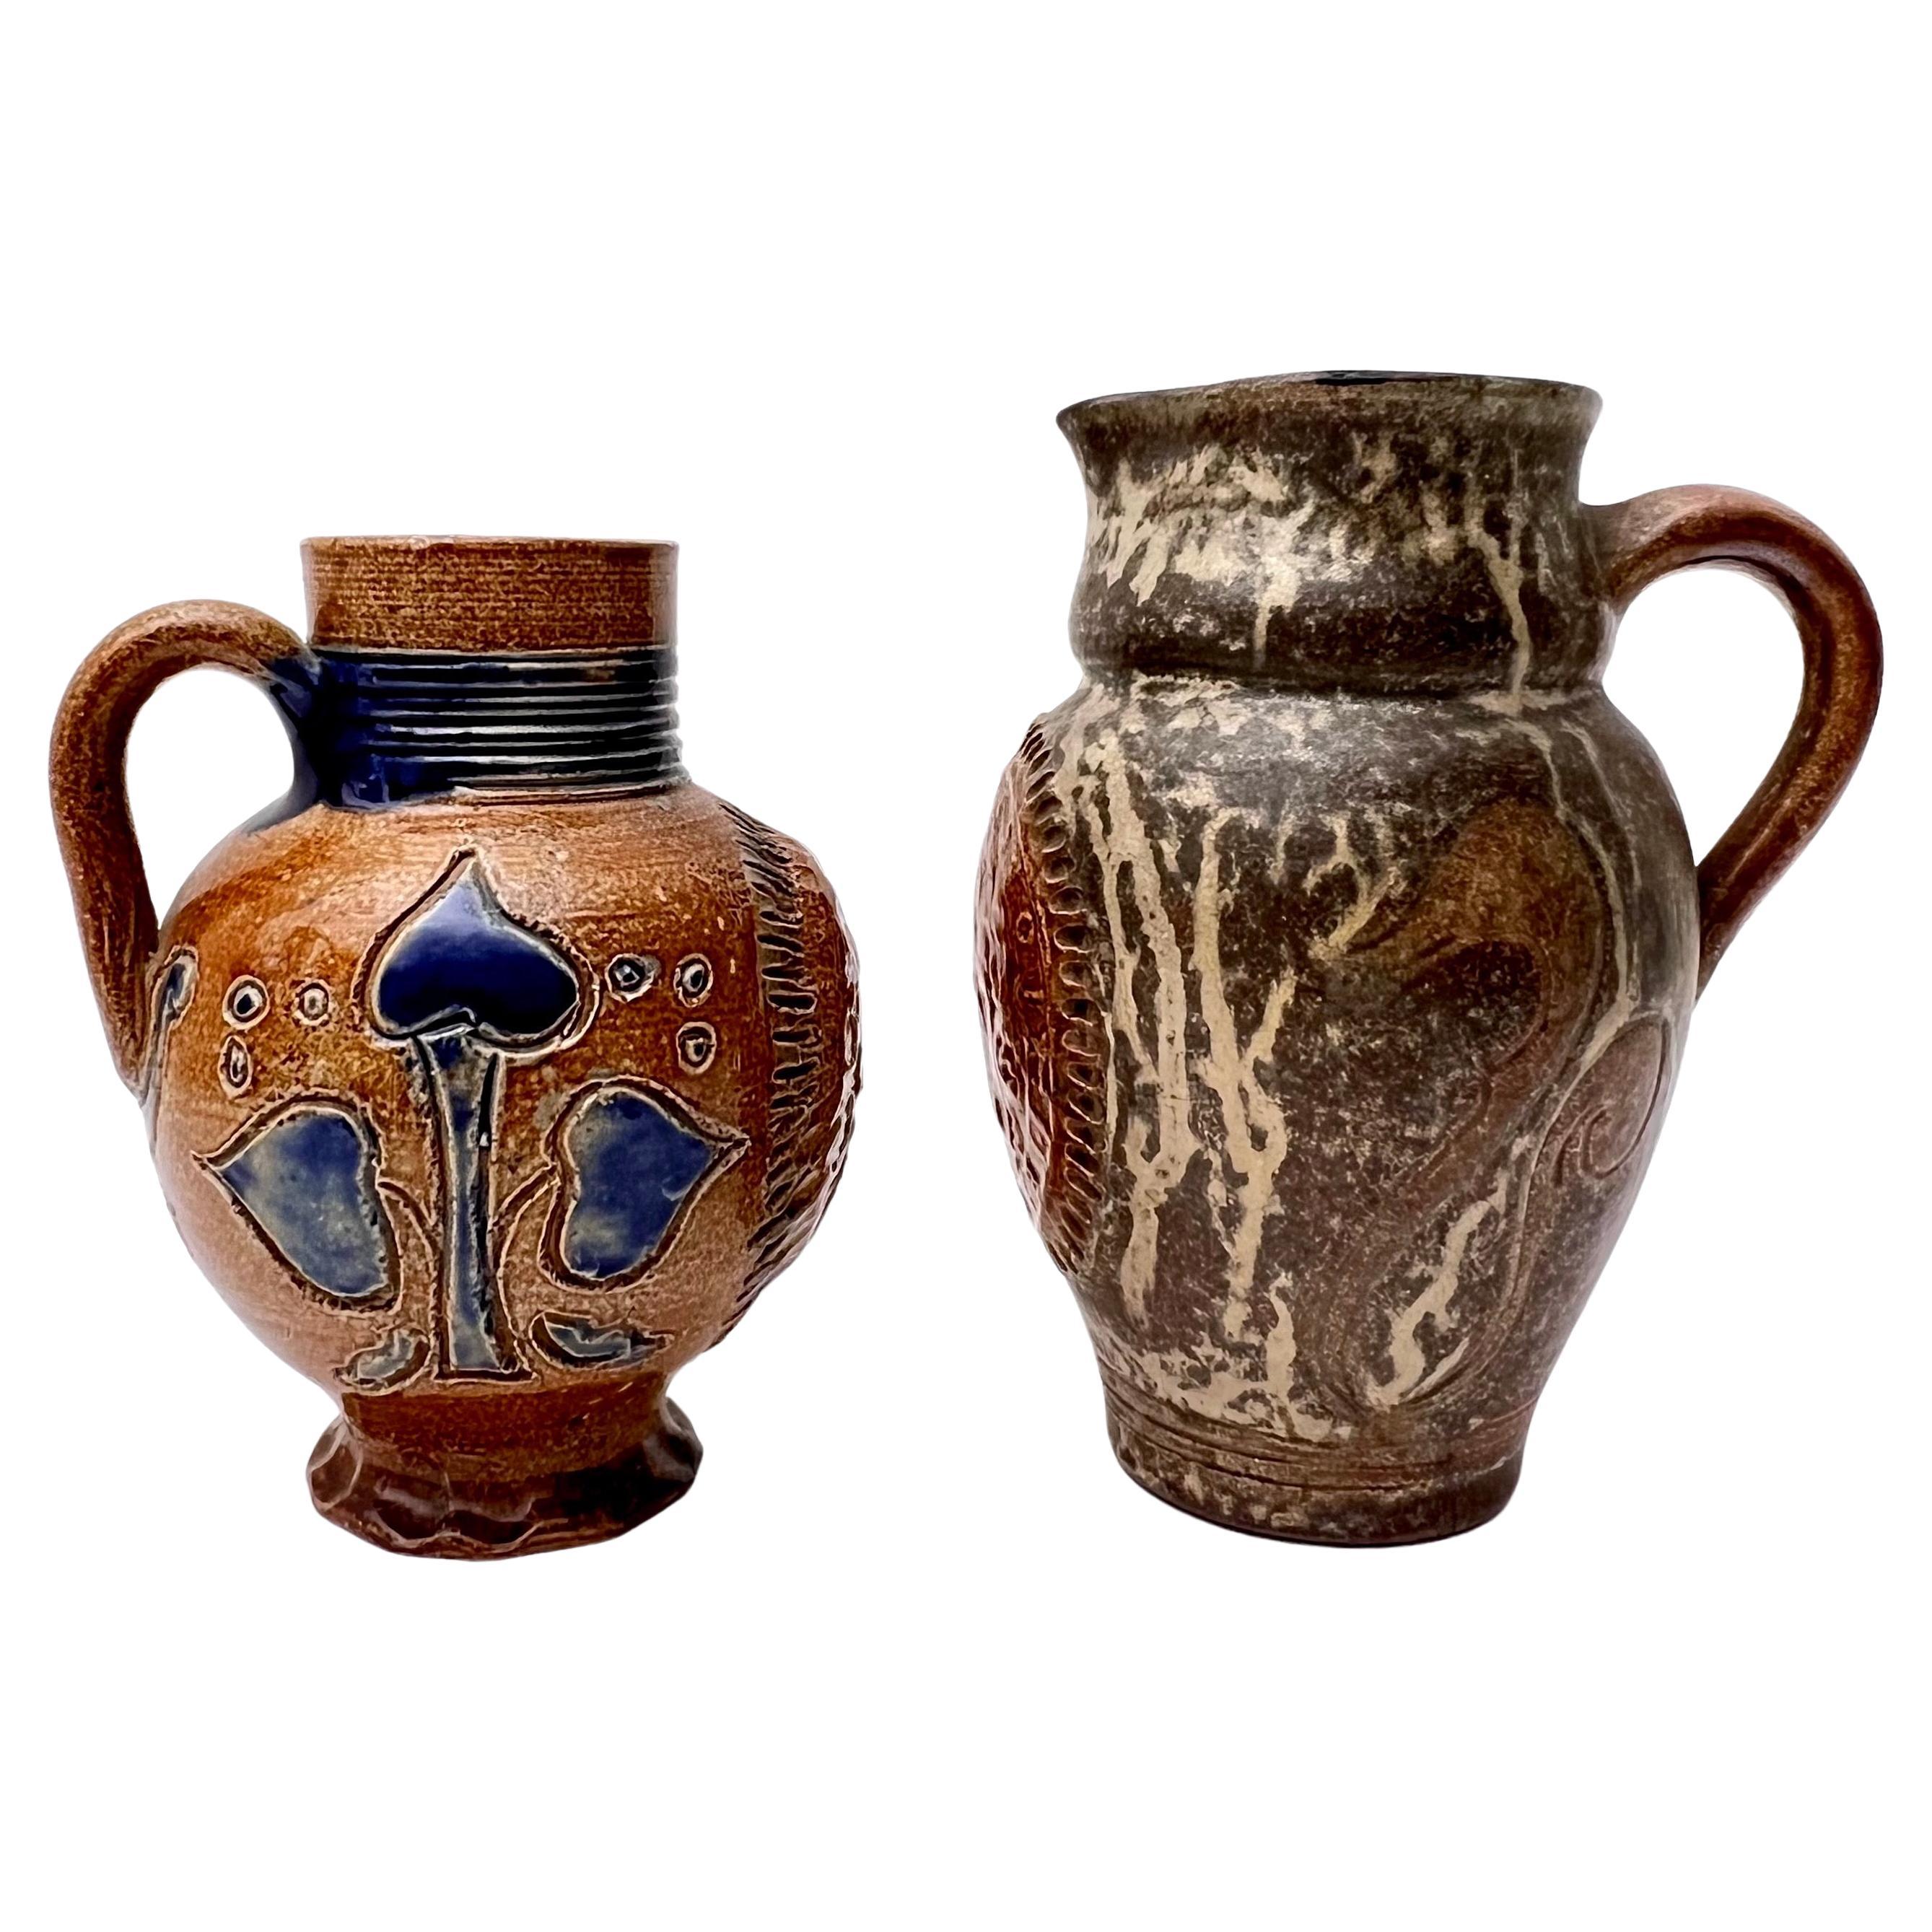 Tolles Paar von Roger Guerin Krug und Vase in der Nähe.  Eine ist ein Krug und eine eine Henkelvase. Jede ist stilisiert mit einem belgischen Wappen auf der Vorderseite des Kruges und dekorativen Motiven an den Seiten.  Ideal für jeden Sammler von